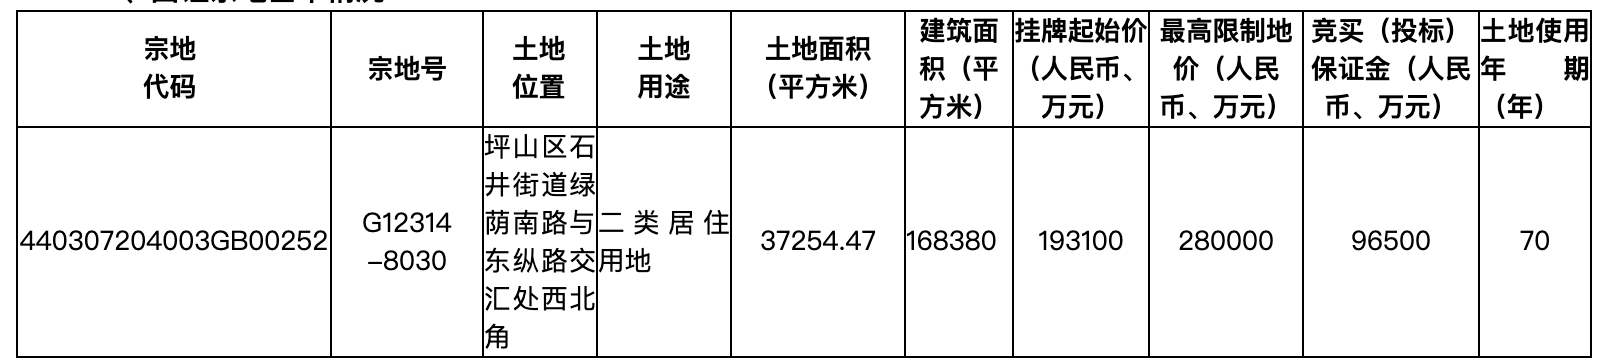 快讯|总价超294.4亿元 深圳一次性集中推出8宗商、住用地